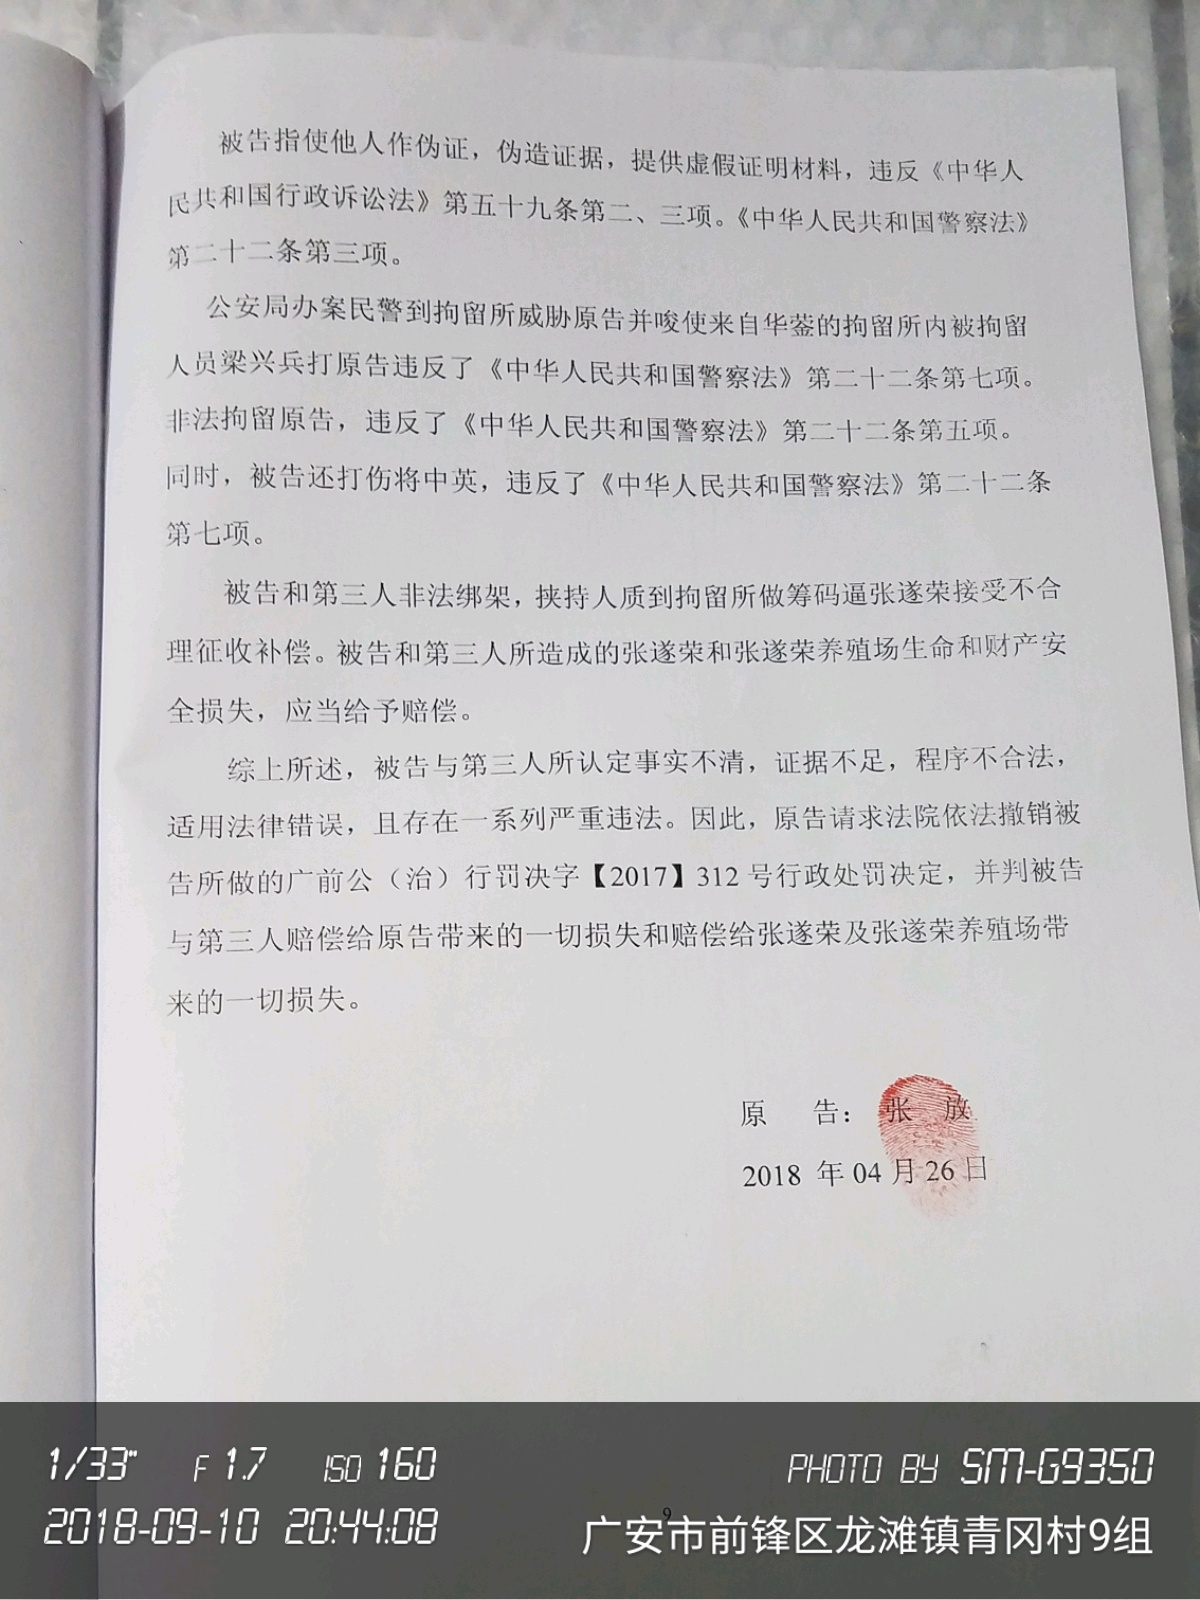 关于响应长江禁捕、拒绝违规水产品的倡议书_中国烹饪协会